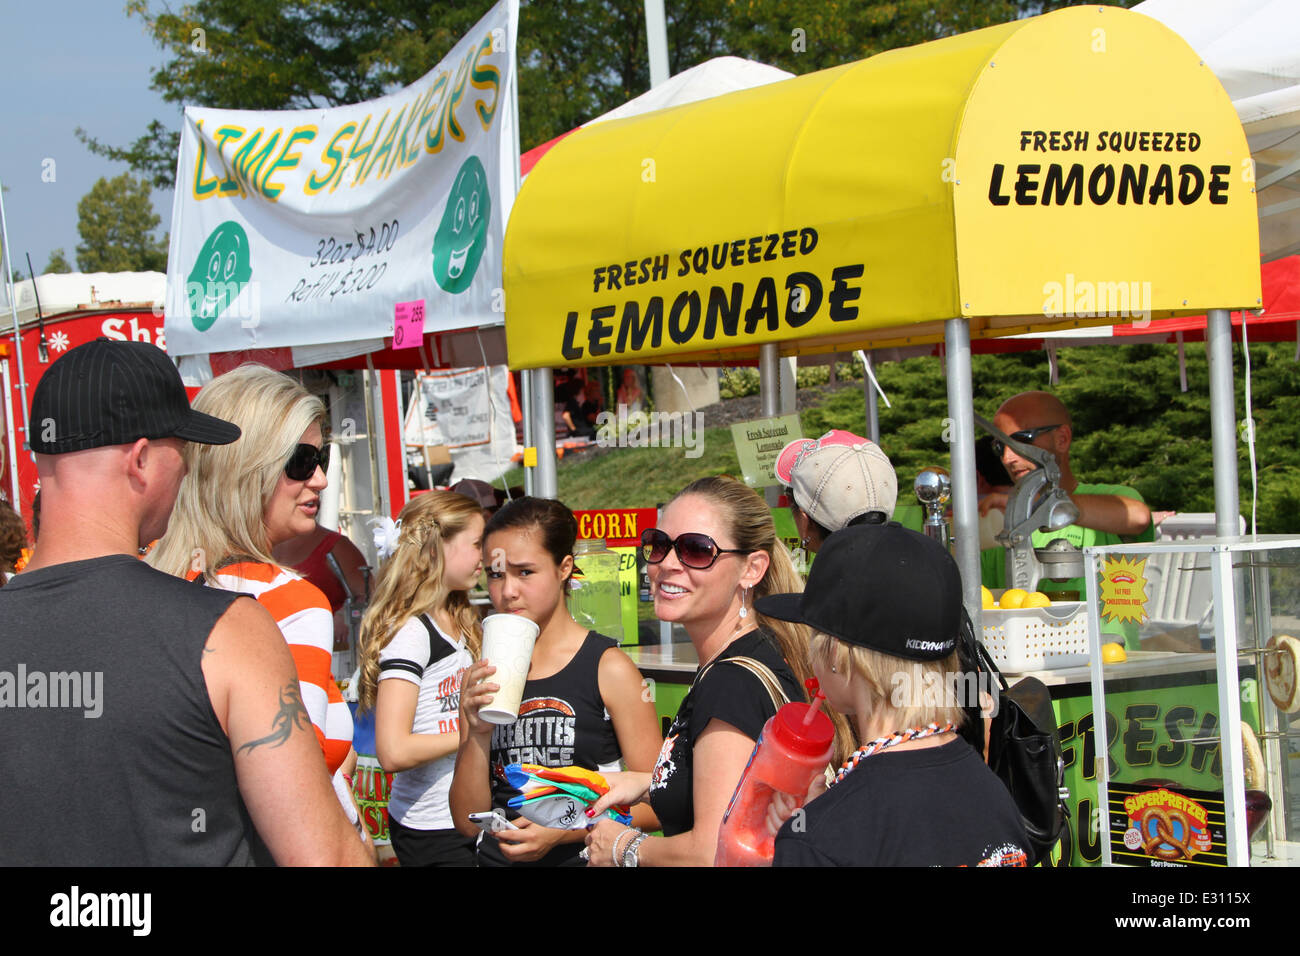 Spremuta fresca di limonata concessione stand con le persone di fronte. Popcorn Beavercreek Festival, Beavercreek, Dayton, Ohio, Stati Uniti d'America. Foto Stock